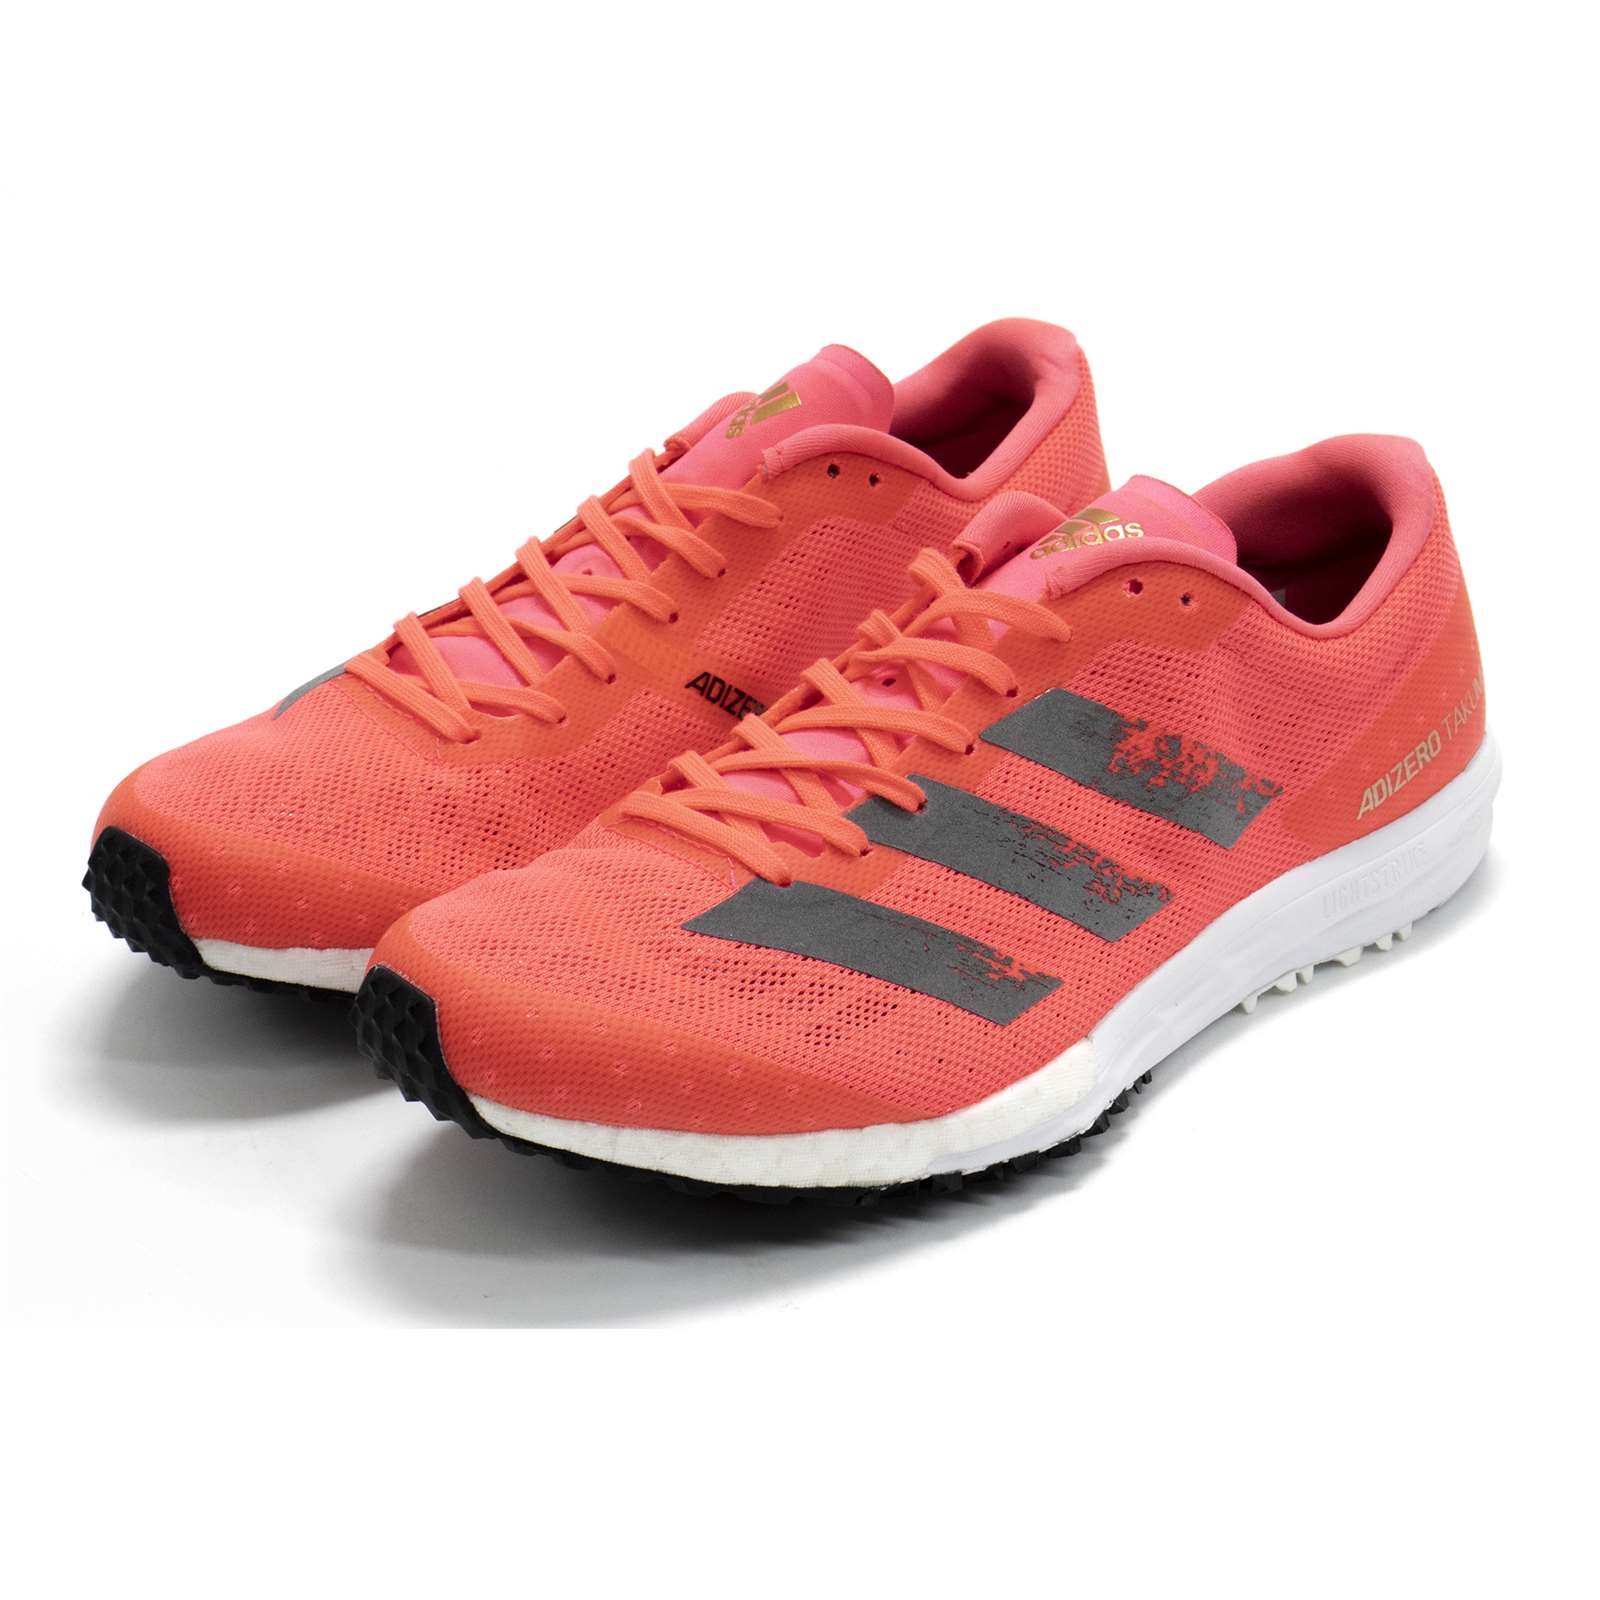 Adidas Men Adizero Takumi Sen 6 Running Shoes